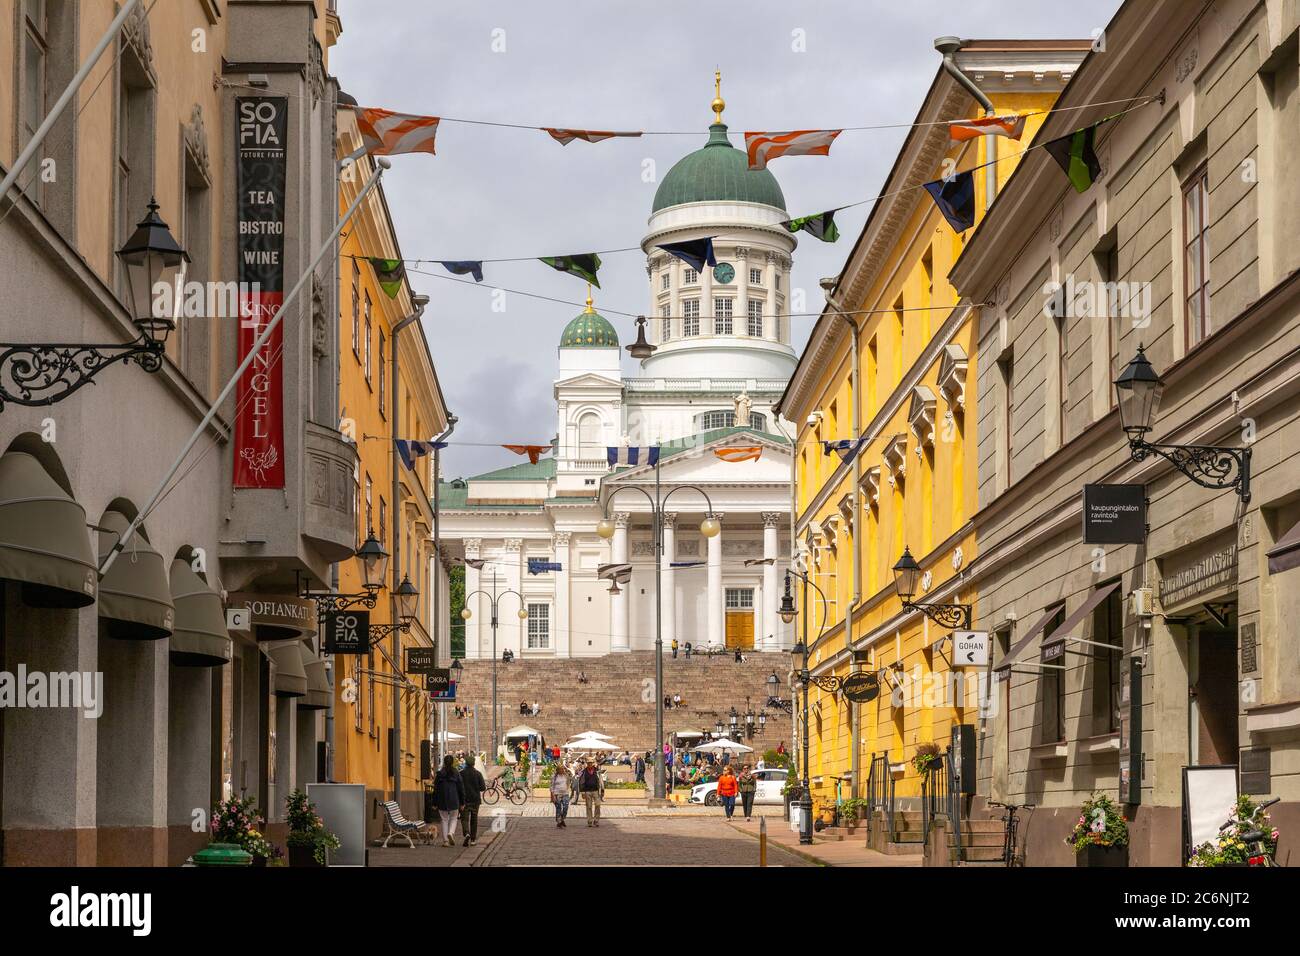 Die Kathedrale von Helsinki ist nach der Frühjahrsverriegelung wieder erwacht. Immer mehr Menschen besuchen diesen Touristenort im Zentrum von Helsinki wieder. Stockfoto